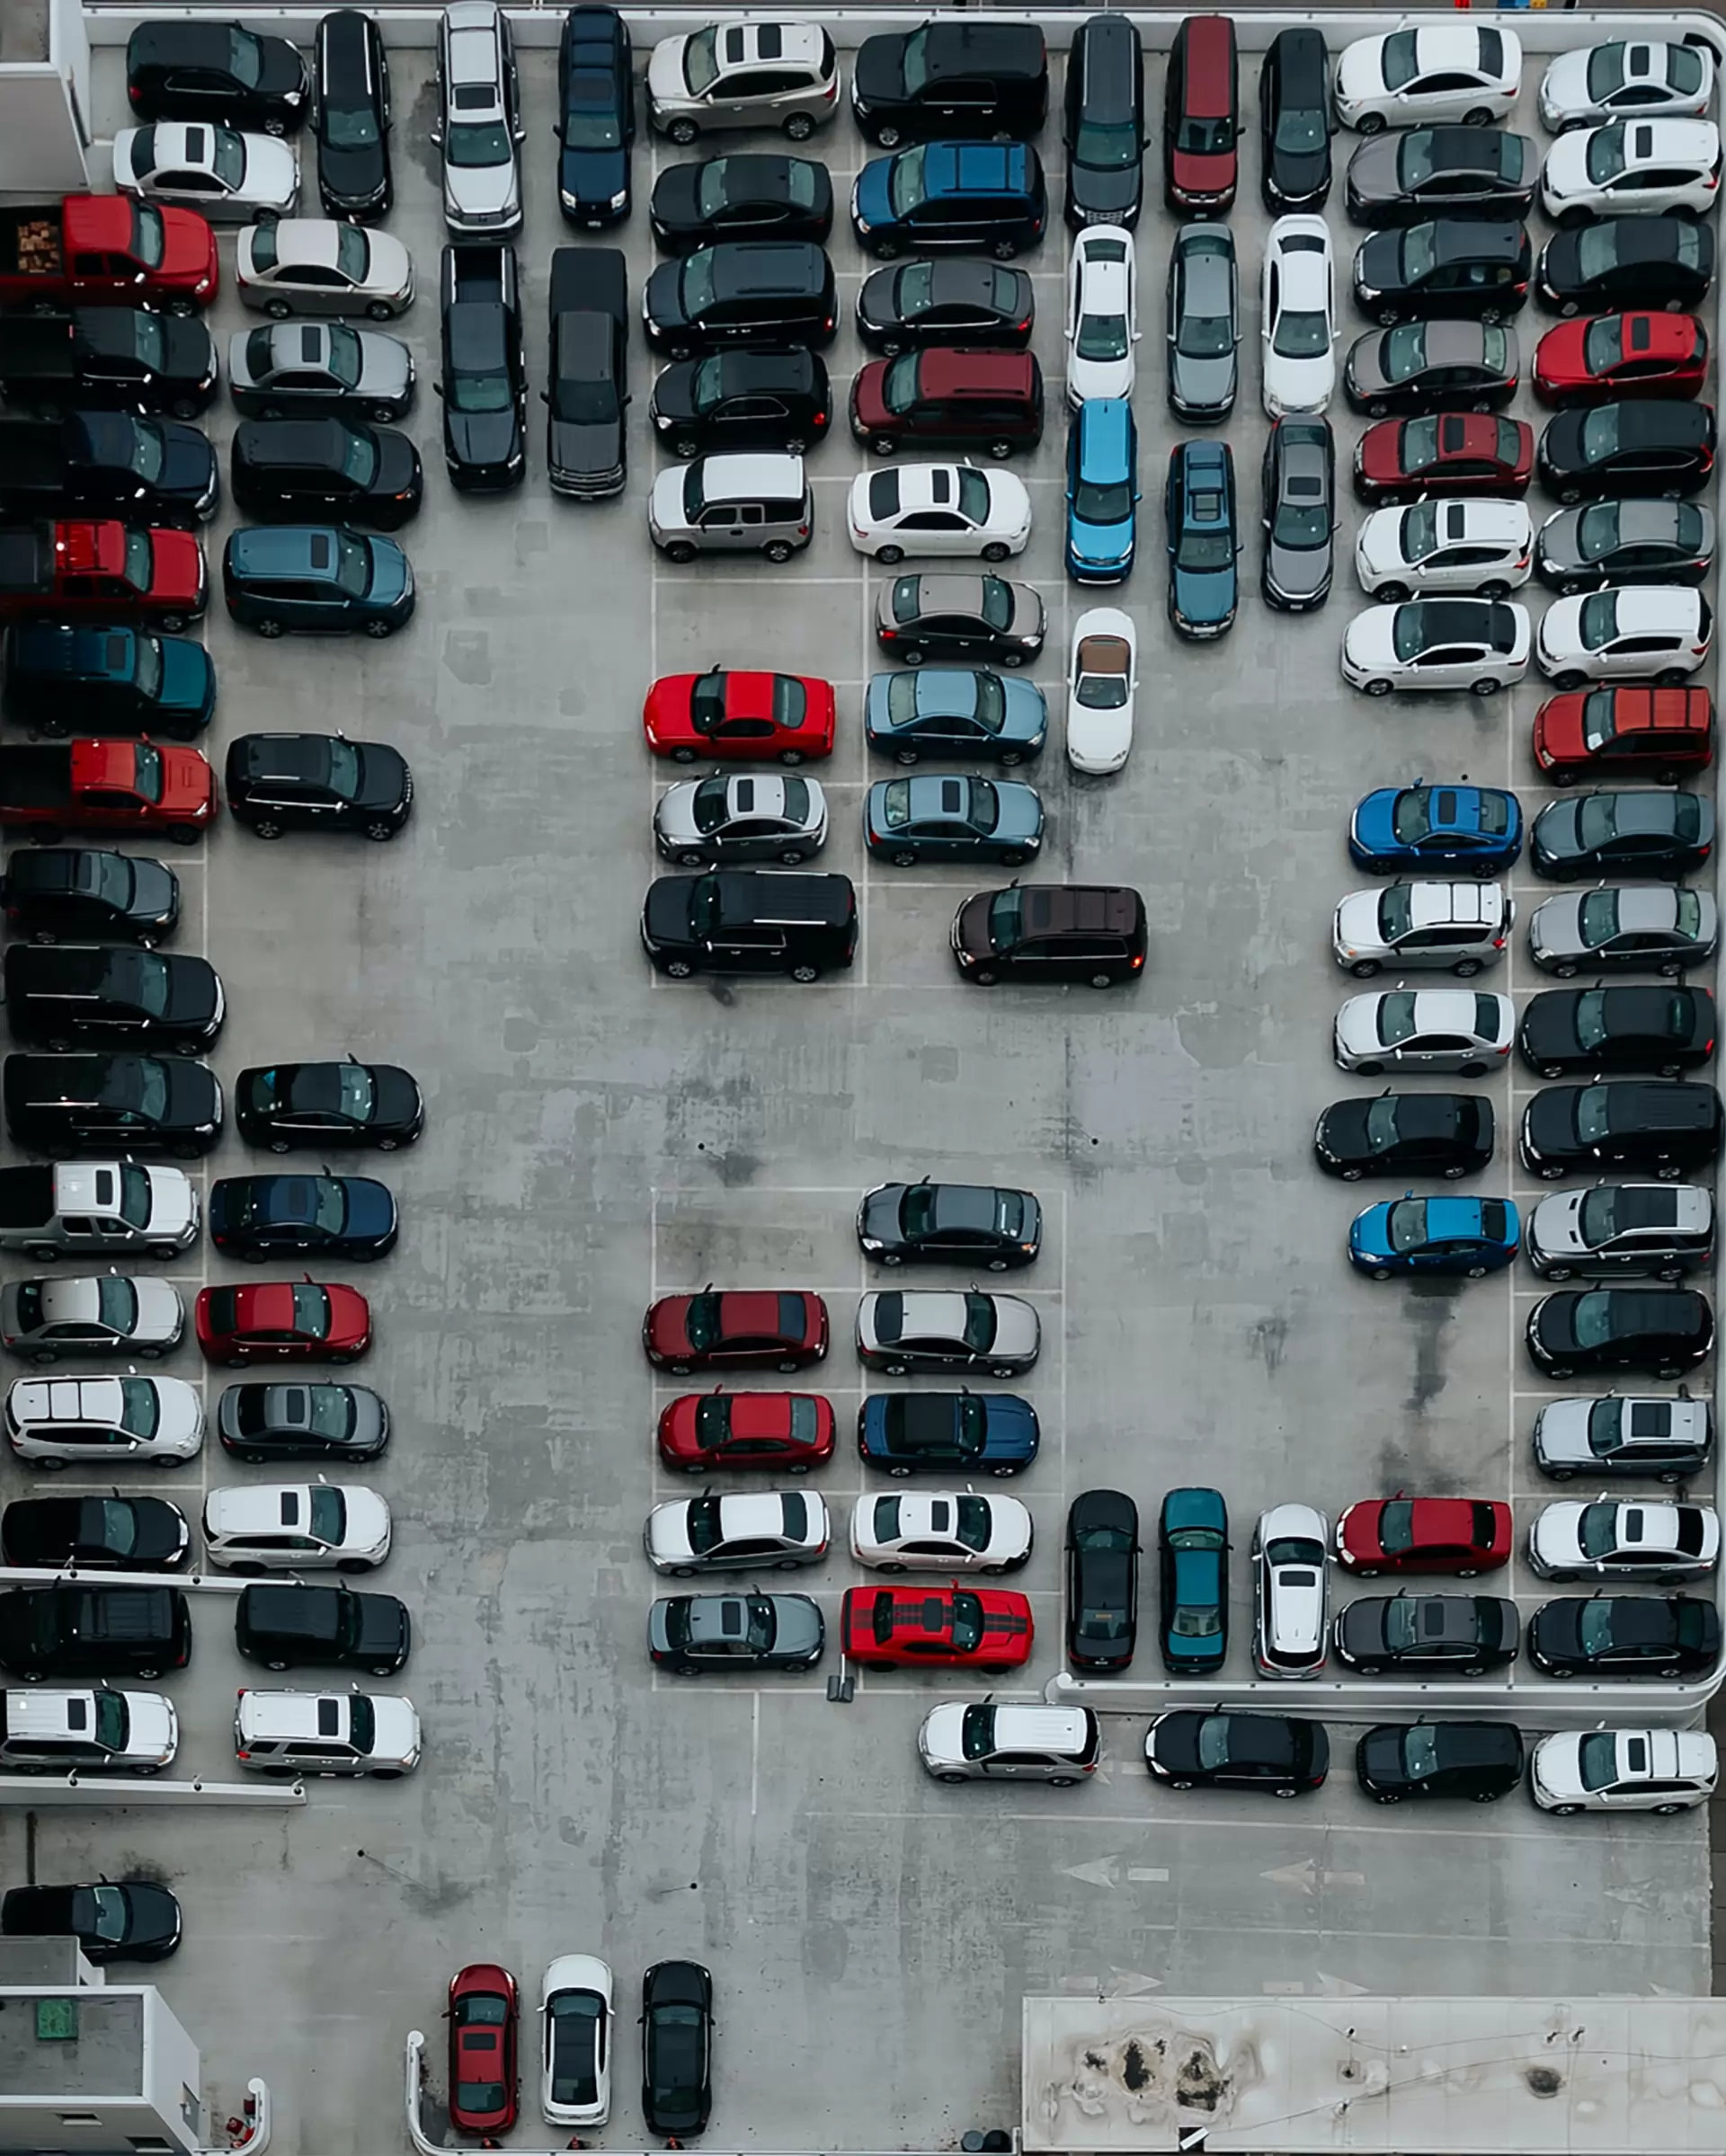 le marché de la gestion de flotte automobile